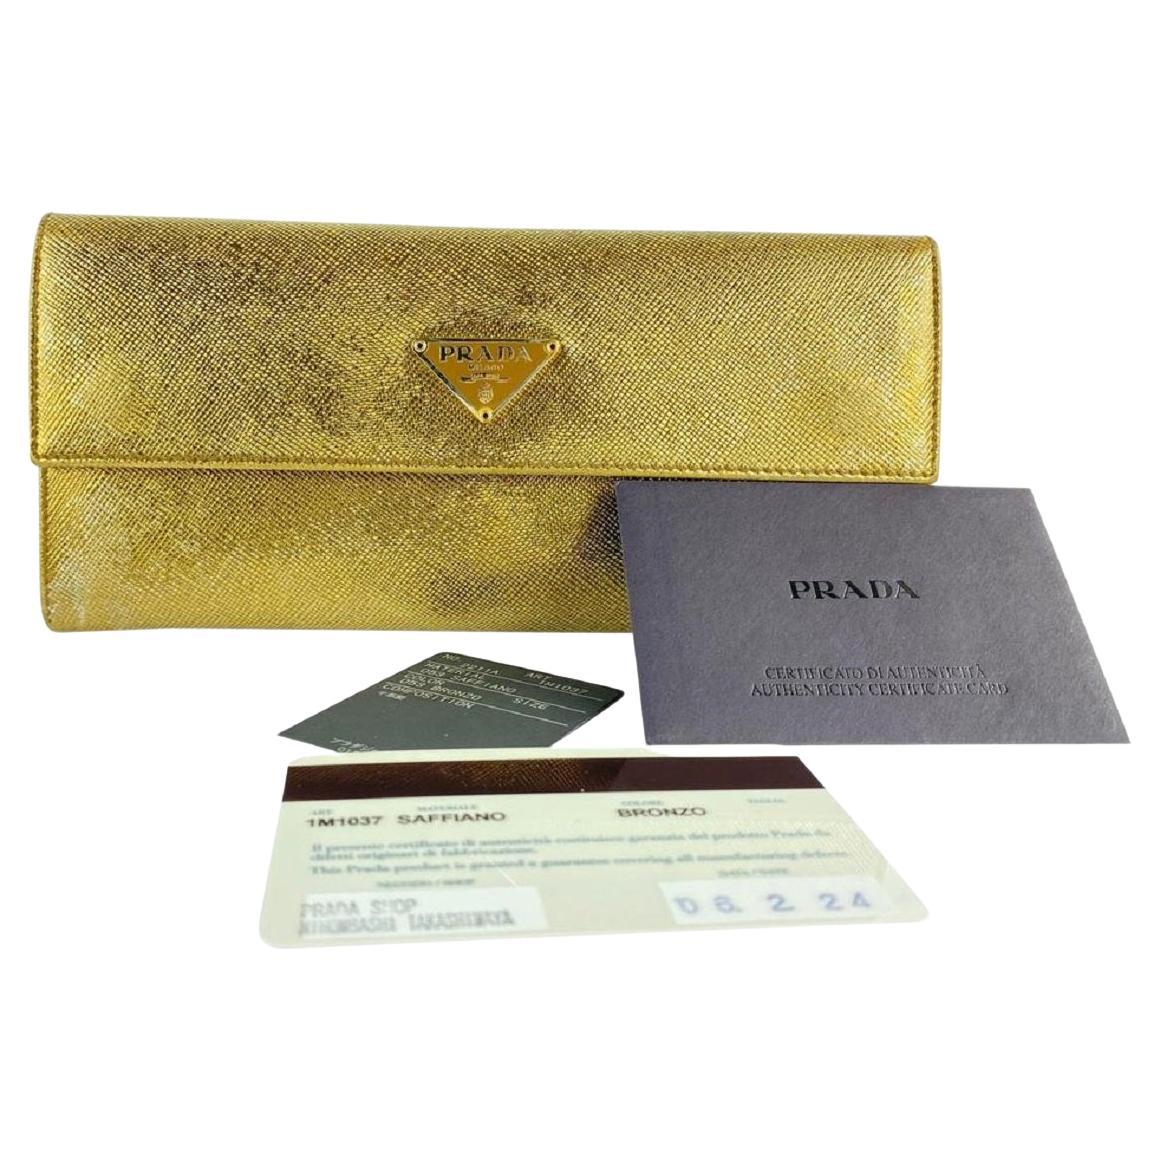 Vintage Prada Wallets and Small Accessories - 152 For Sale at 1stDibs |  black prada wallet, brown prada wallet, buy prada wallet